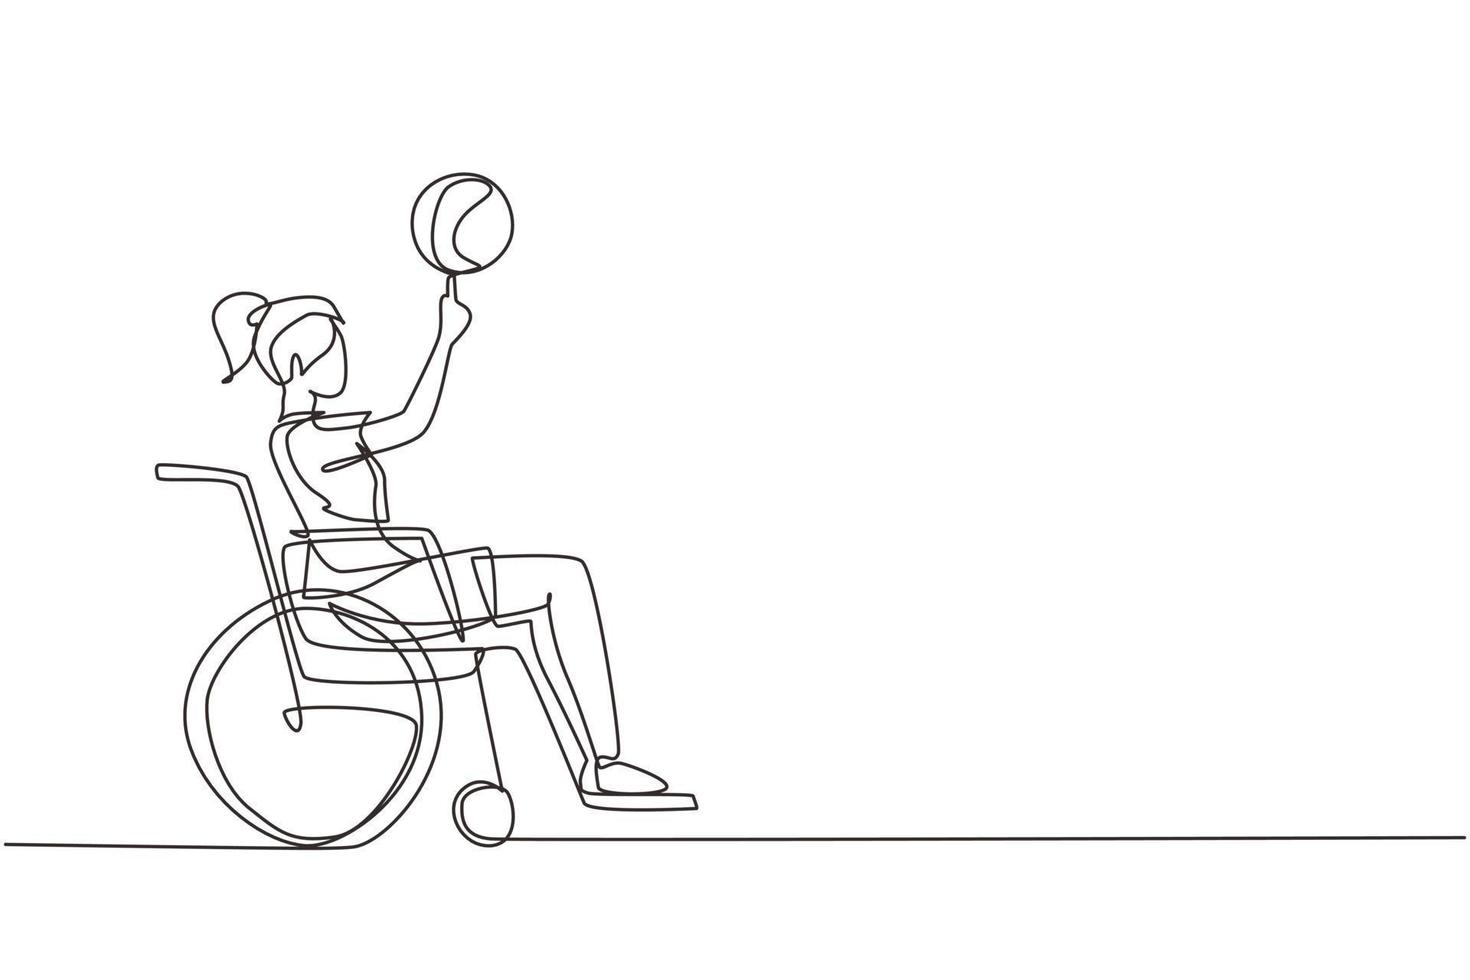 disegno continuo di una linea ragazza carina in sedia a rotelle gioca a basket. la persona disabile fa girare la pallacanestro sul dito. esercizio per le persone con disabilità. illustrazione vettoriale di disegno a linea singola